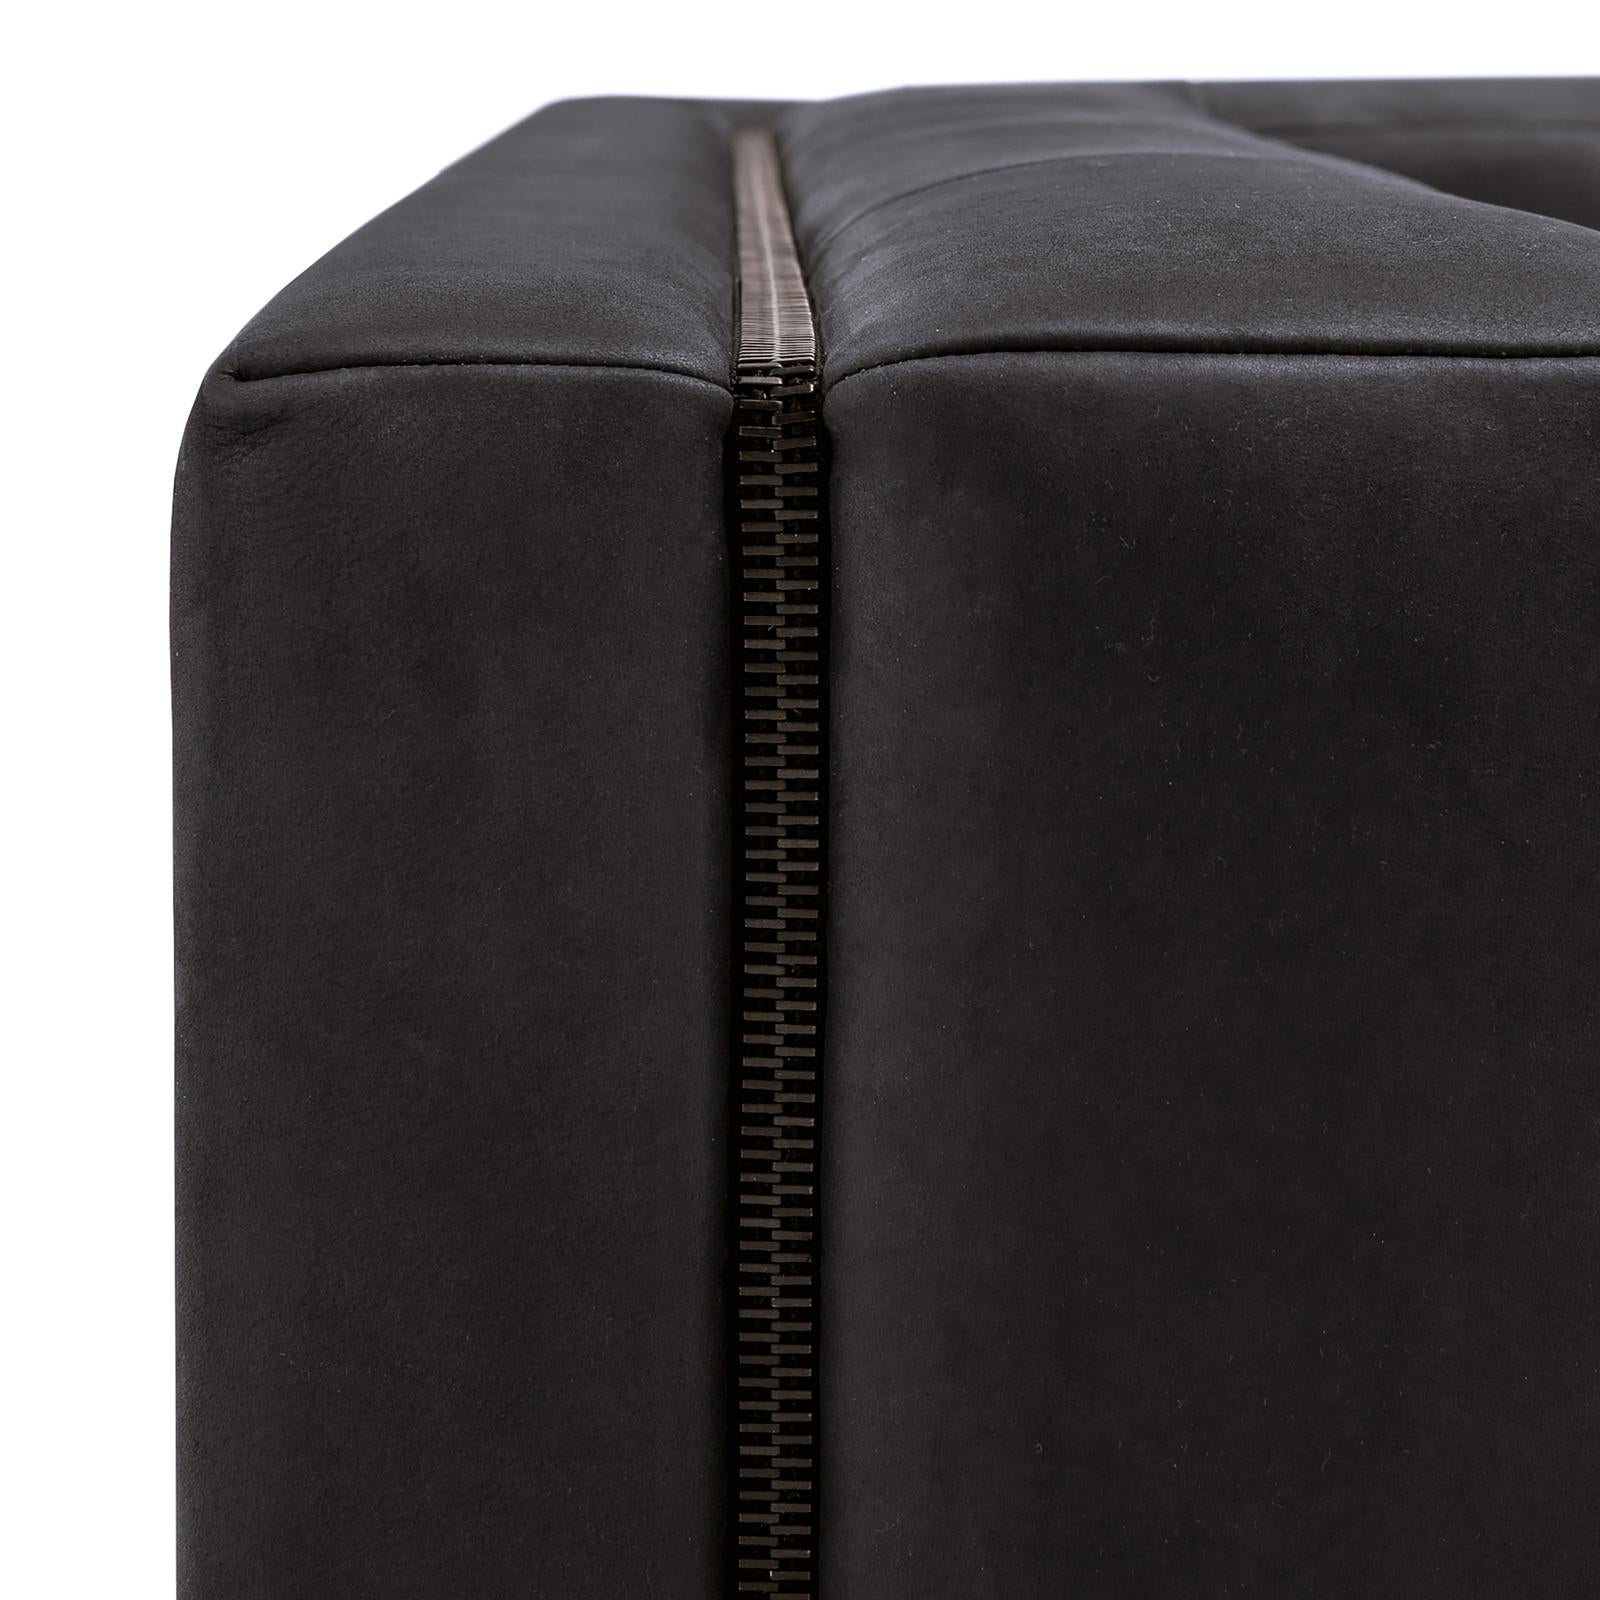 Dieses Sofa ist ein vielseitiges Möbelstück, das sich hervorragend mit verschiedenen Stücken der Collection'S kombinieren lässt. Das elegante Design besteht aus einer mattschwarz lackierten Stahlstruktur mit schlanken Füßen, gepolstert mit